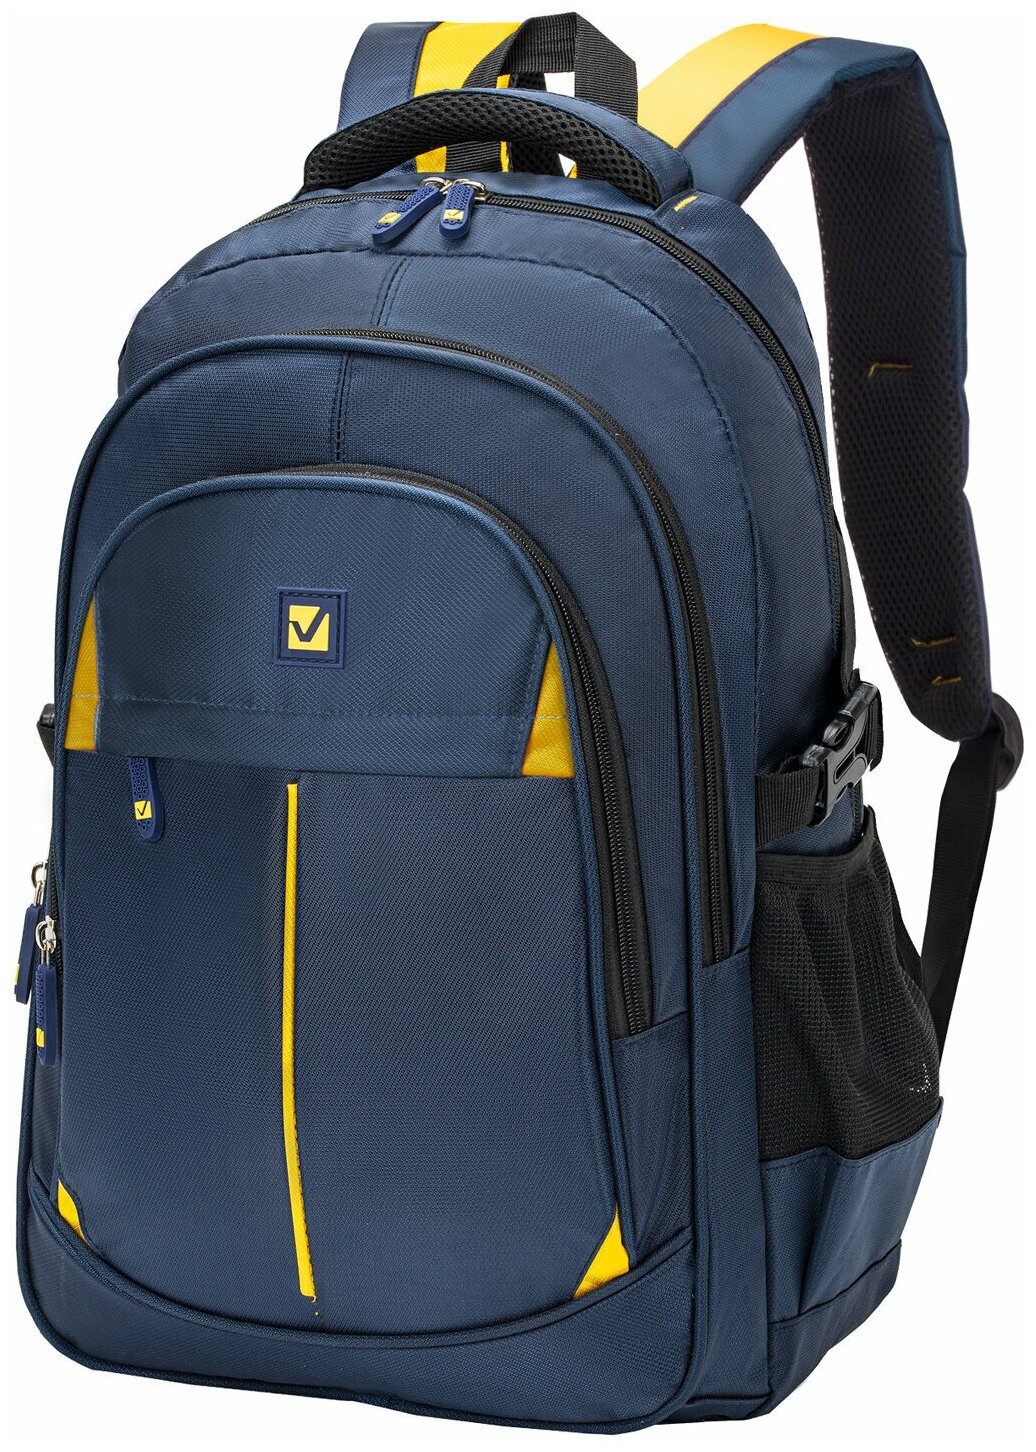 Рюкзак Brauberg Titanium универсальный, синий, желтые вставки, 45х28х18 см